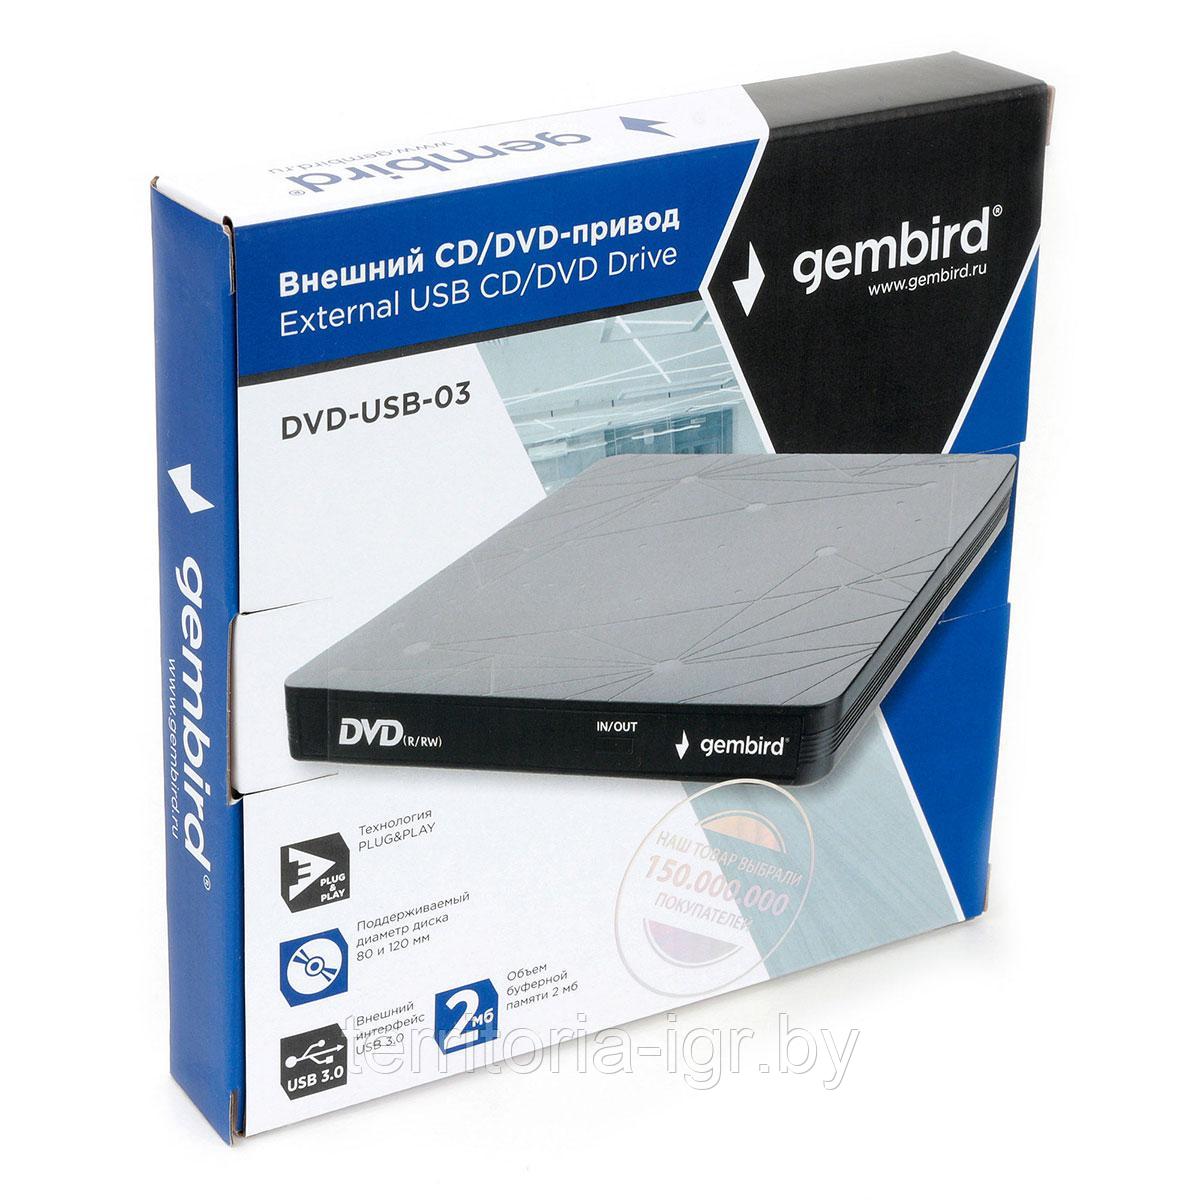 Внешний DVD-привод DVD-USB-03 Gembird